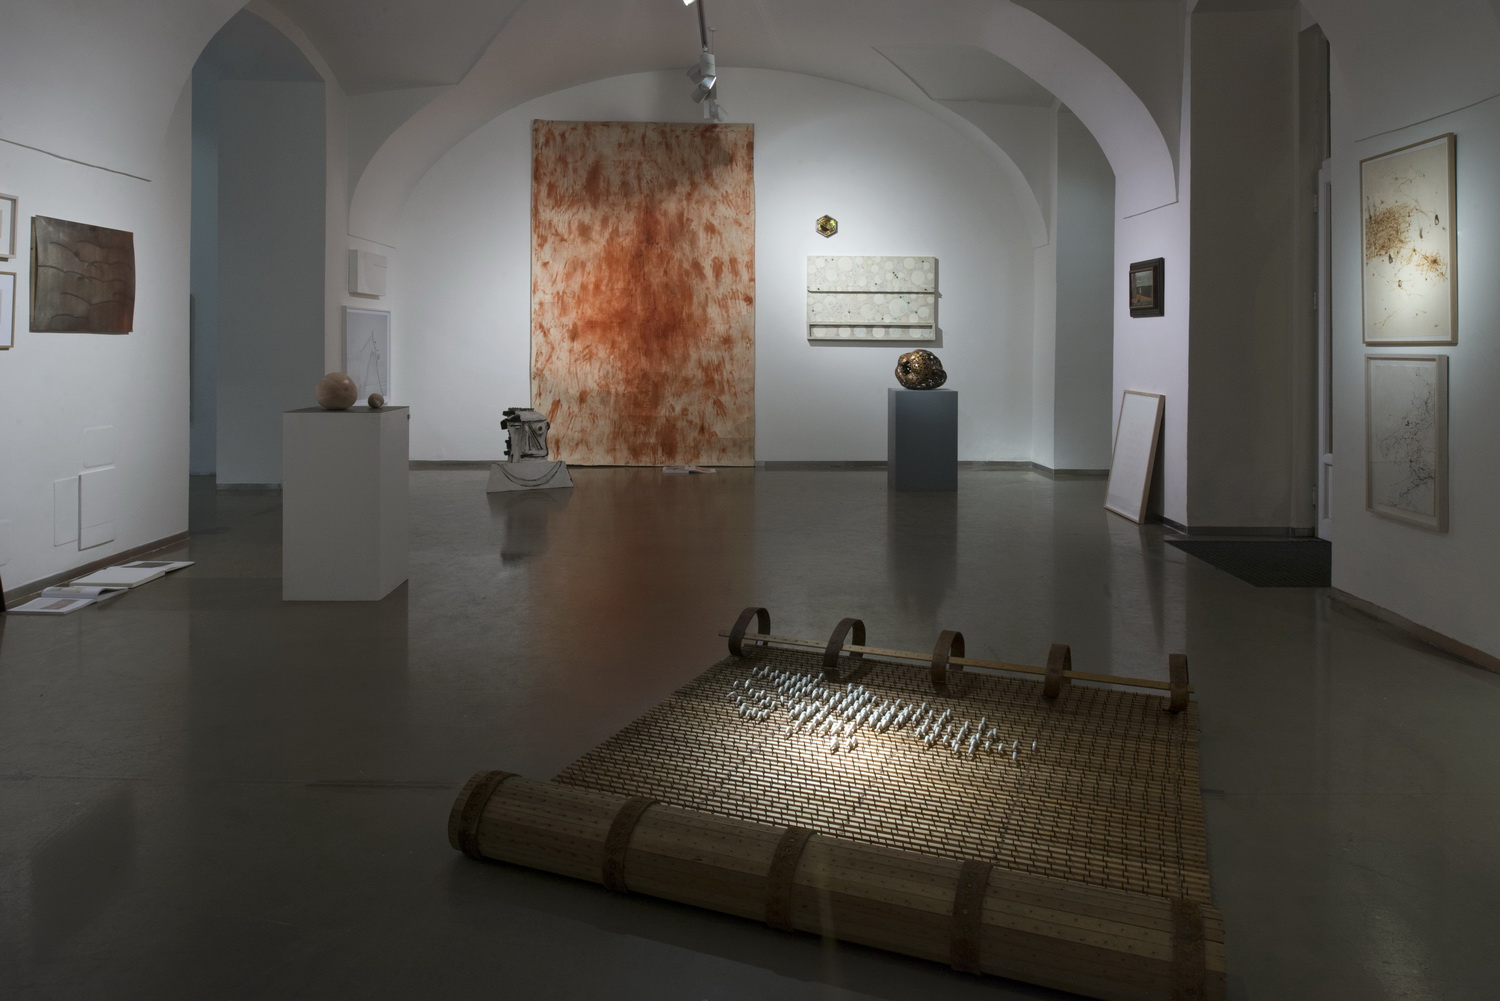 Instalace Etcetera 1, Galerie Kvalitář 2015